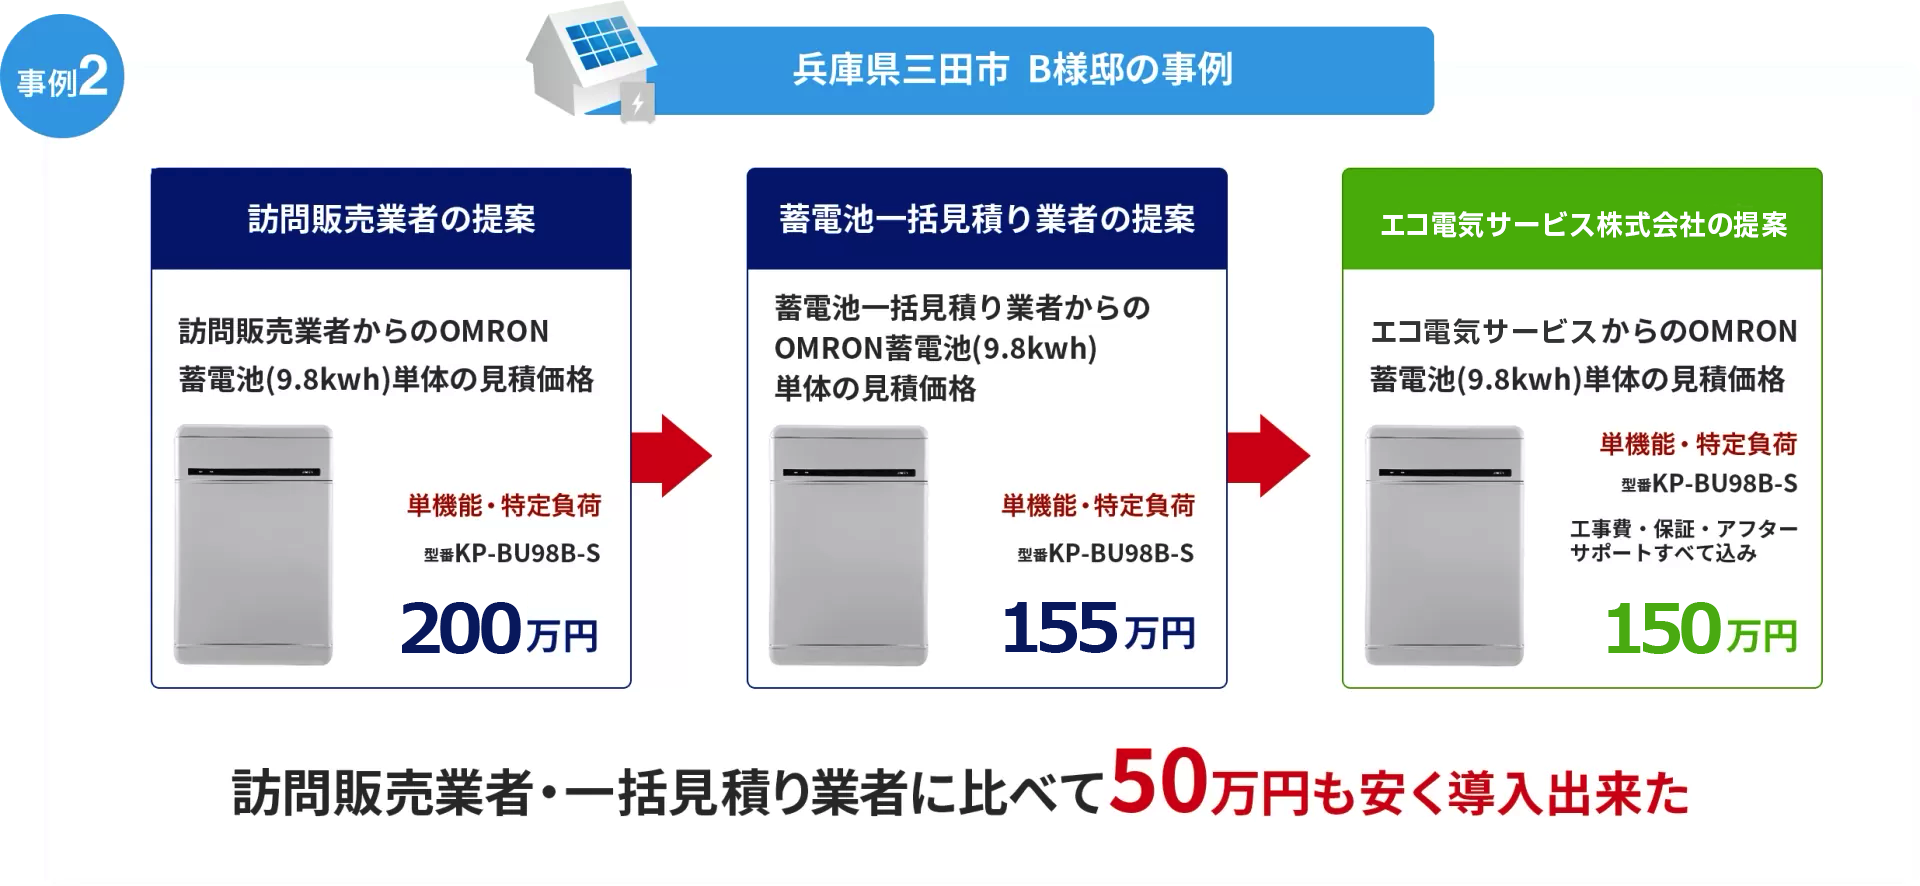 全く同じ蓄電池が50万円以上安くなった事例